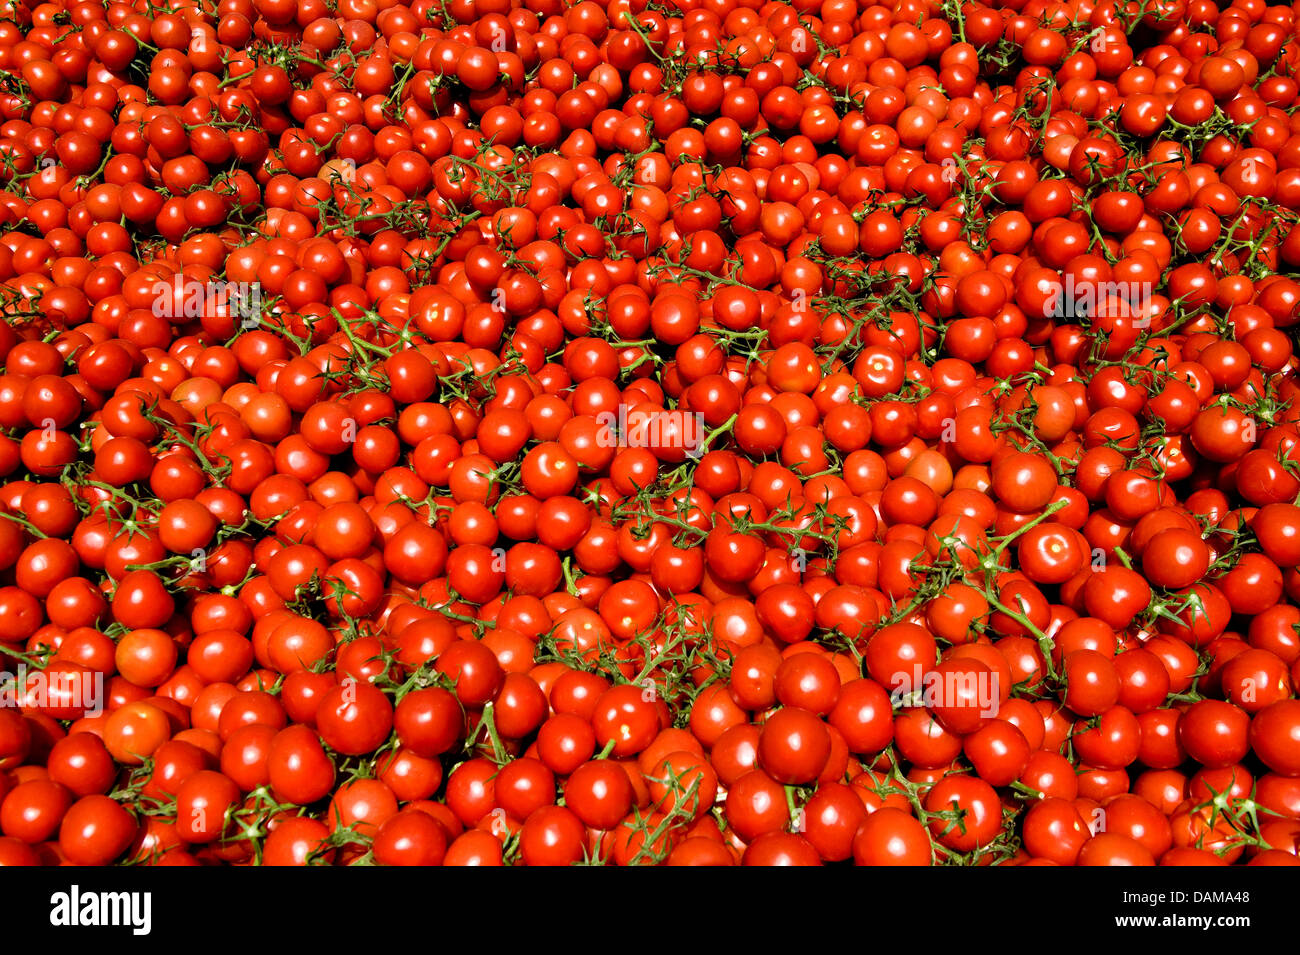 Rund 600 Kilogramm Tomaten Tomaten Bauer Theo Germes lag innerhalb eines Containers zur Vernichtung in Geldern, Deutschland, 1. Juni 2011. Die EHEC-Krise verursacht Millionen von Verlusten für die deutschen Landwirte. Einen erheblichen Umsatzeinbruch ist von Landgard, ein Winzer Genossenschaft mit 700 Gemüse Unternehmen am Niederrhein gemeldet. Foto: VICTORIA BONN-MEUSER Stockfoto